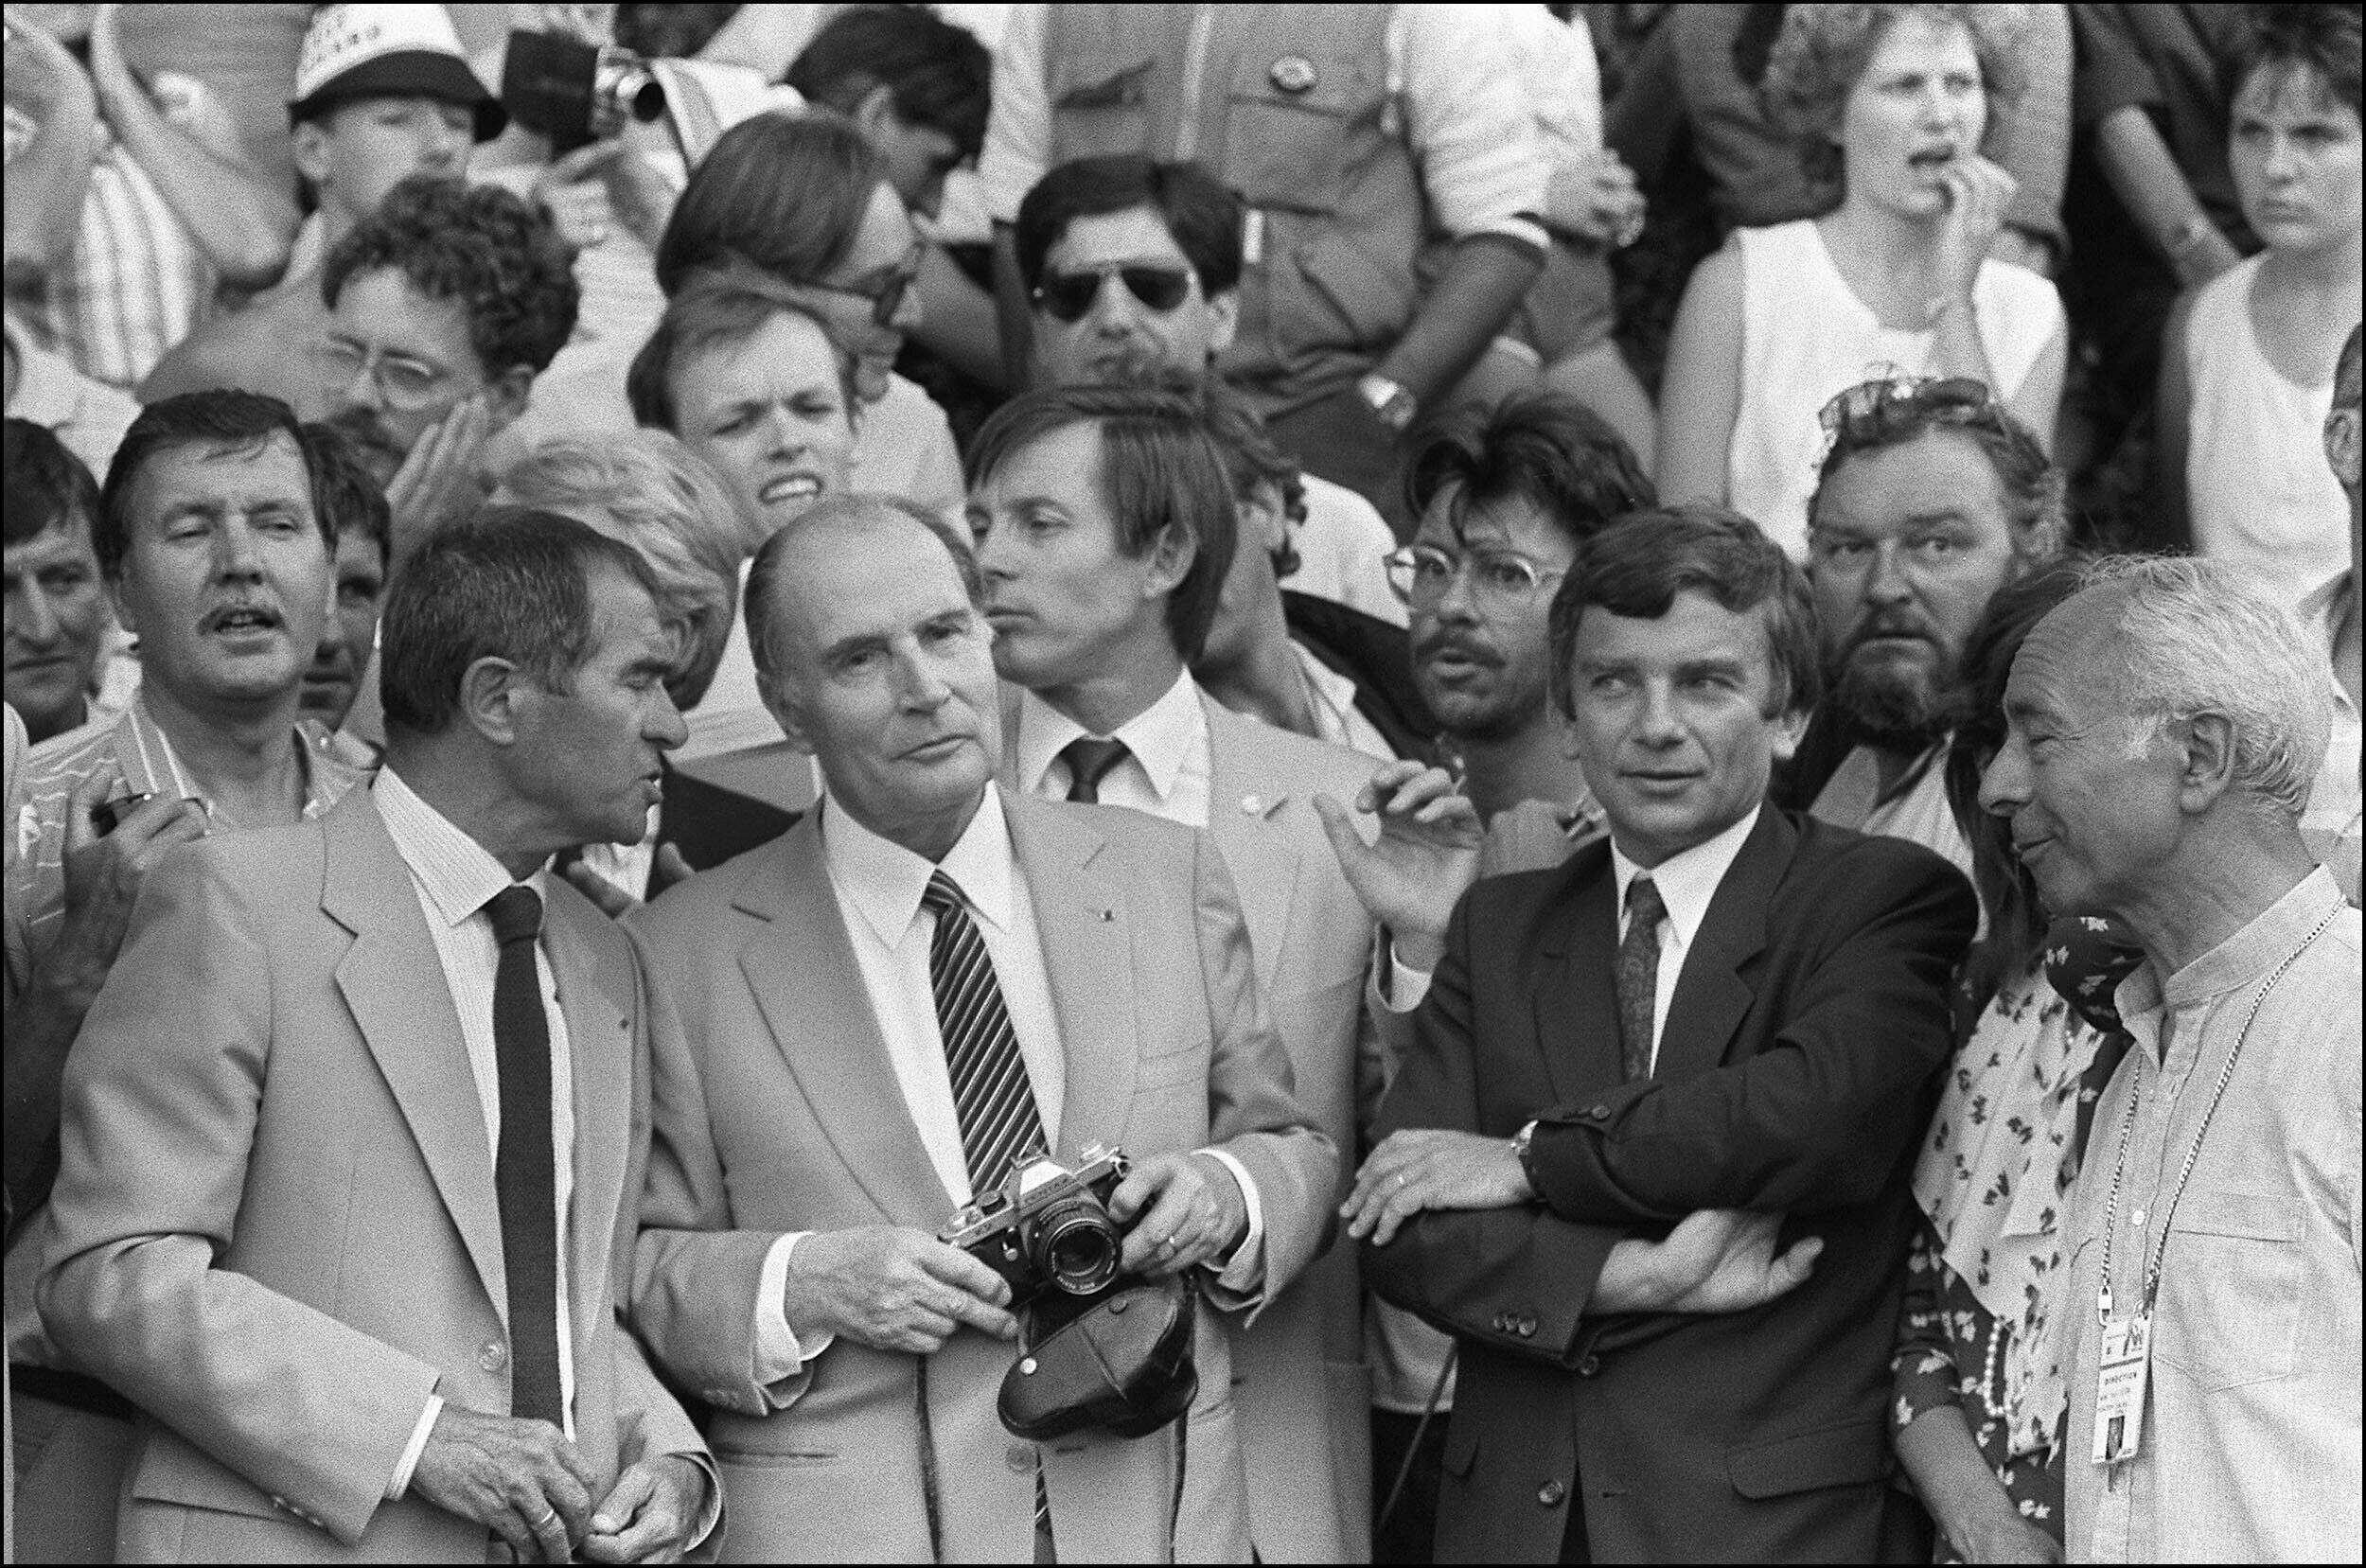 François Mitterrand, appareil photo en main, immortalise le passage des coureurs du Tour de France notamment le maillot jaune Bernard Hinault lors de l'étape Morzine-Villard de Lans, le 10 juillet 1985.